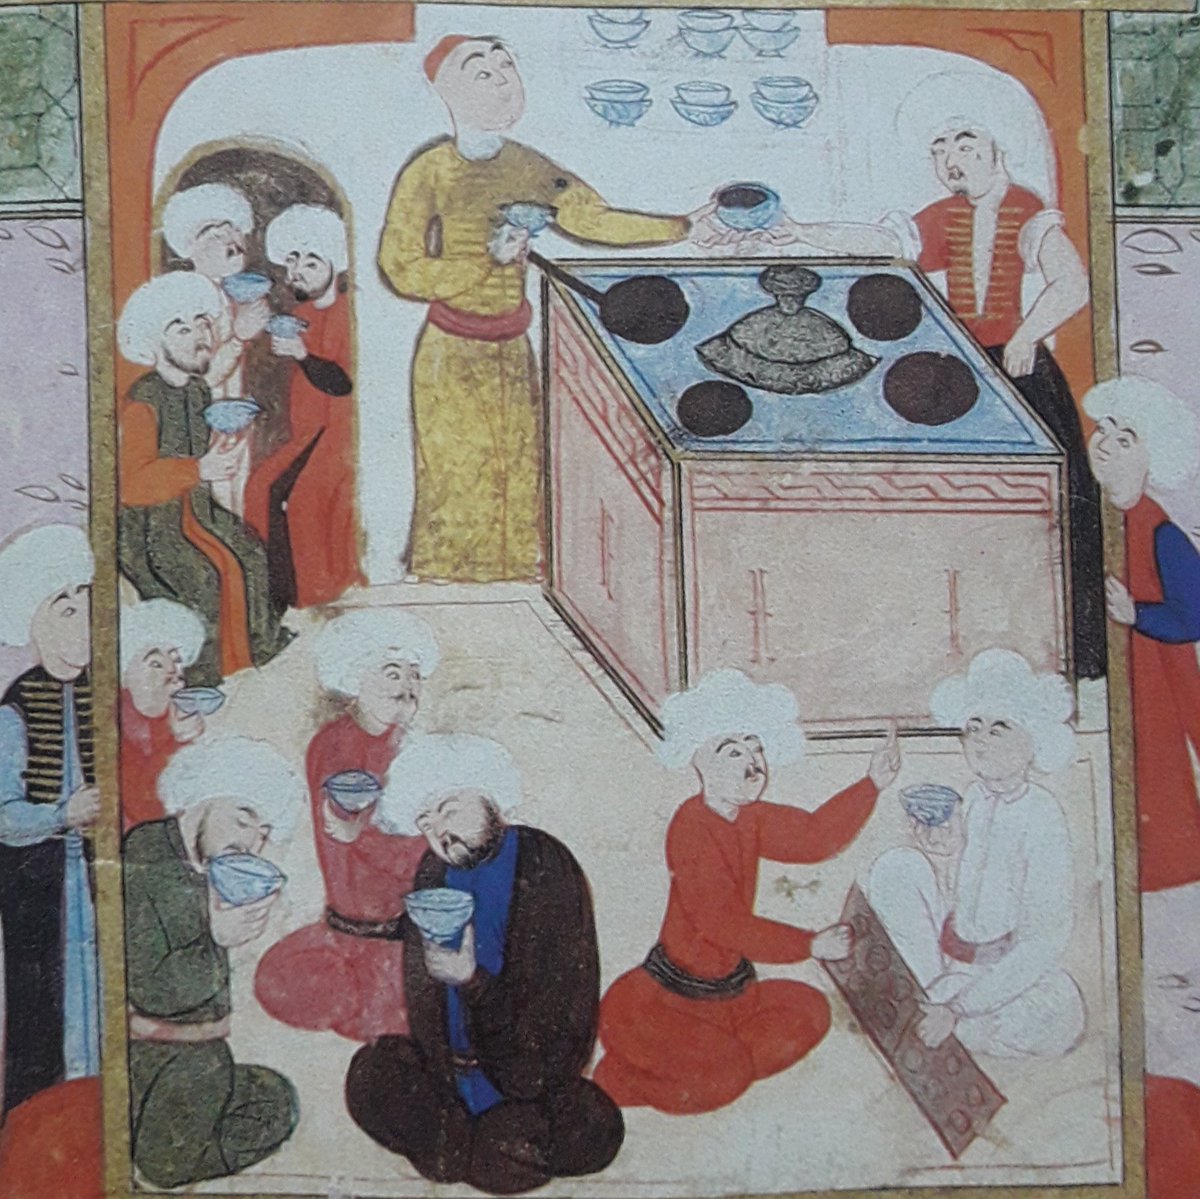 Kimince haram, kimince mekruh ilan edilse de Osmanlı döneminde kahve, Türklerin